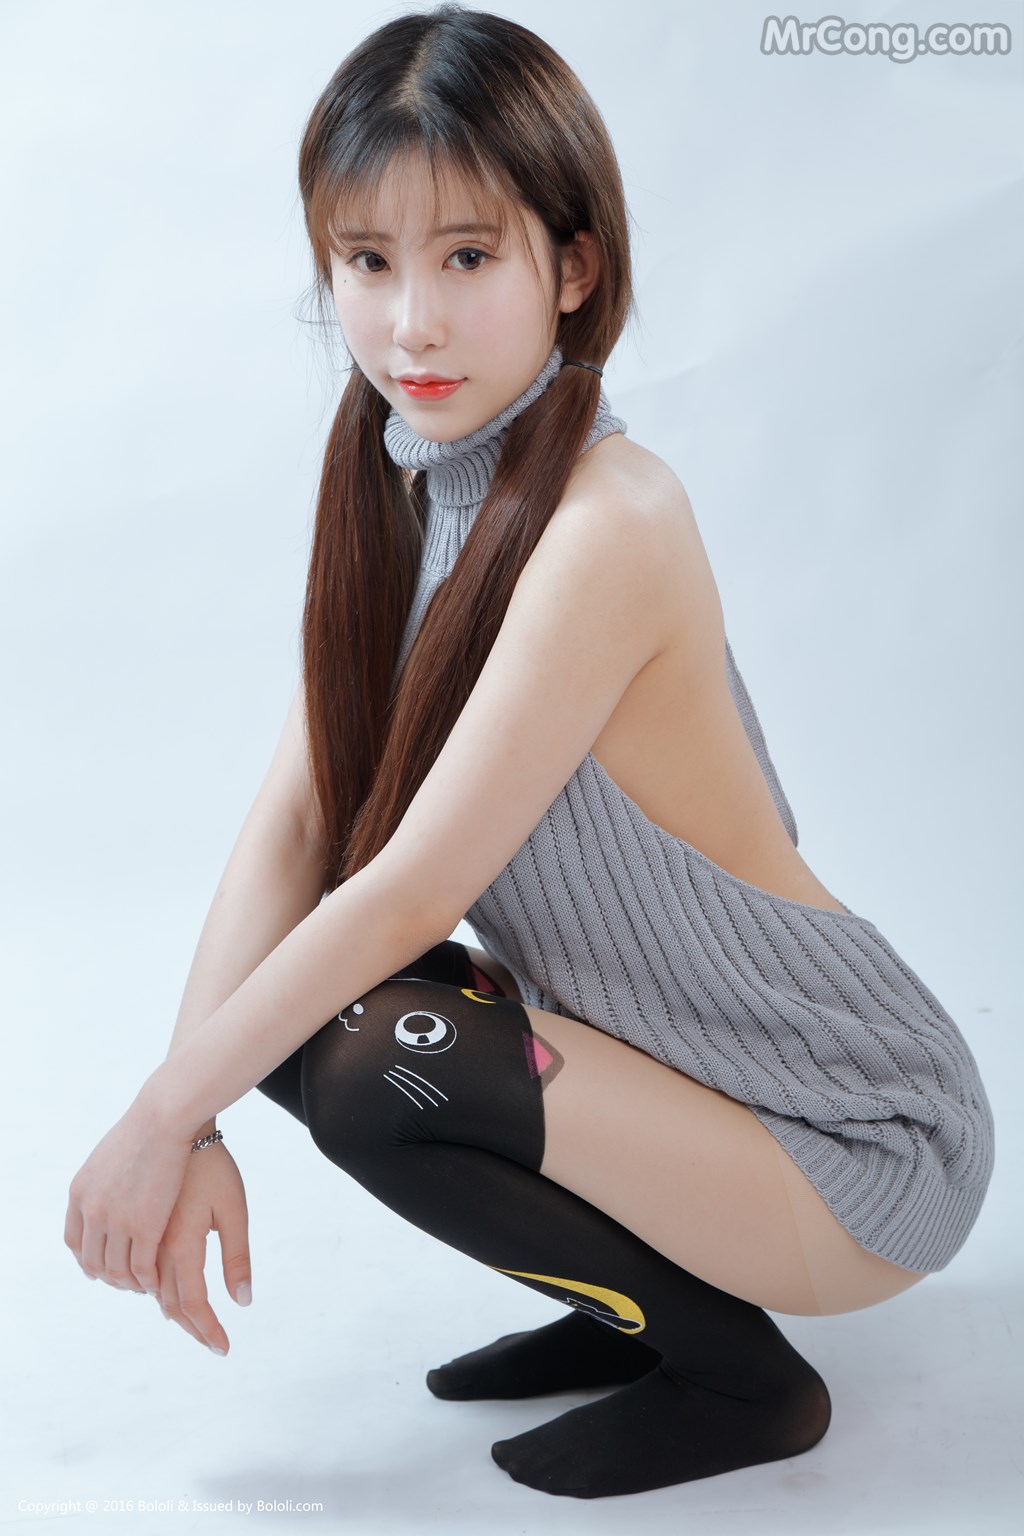 BoLoli 2017-06-20 Vol.072: Model Luo Li You You Jiang (萝莉 悠悠 酱) (42 photos) photo 1-16